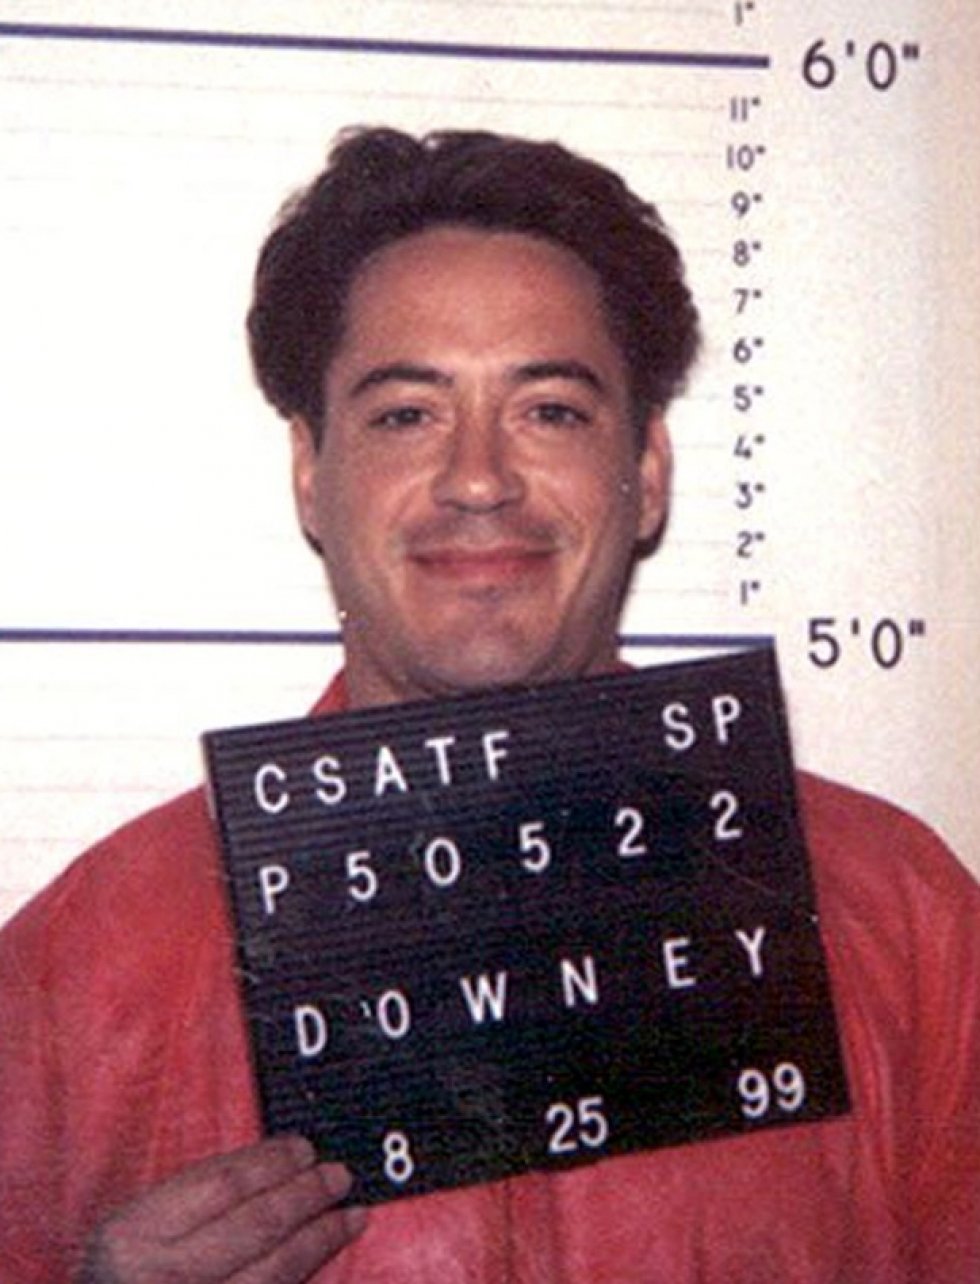 Mugshot 1999 - Robert Downey, Jr. - fra junkie til jernmand